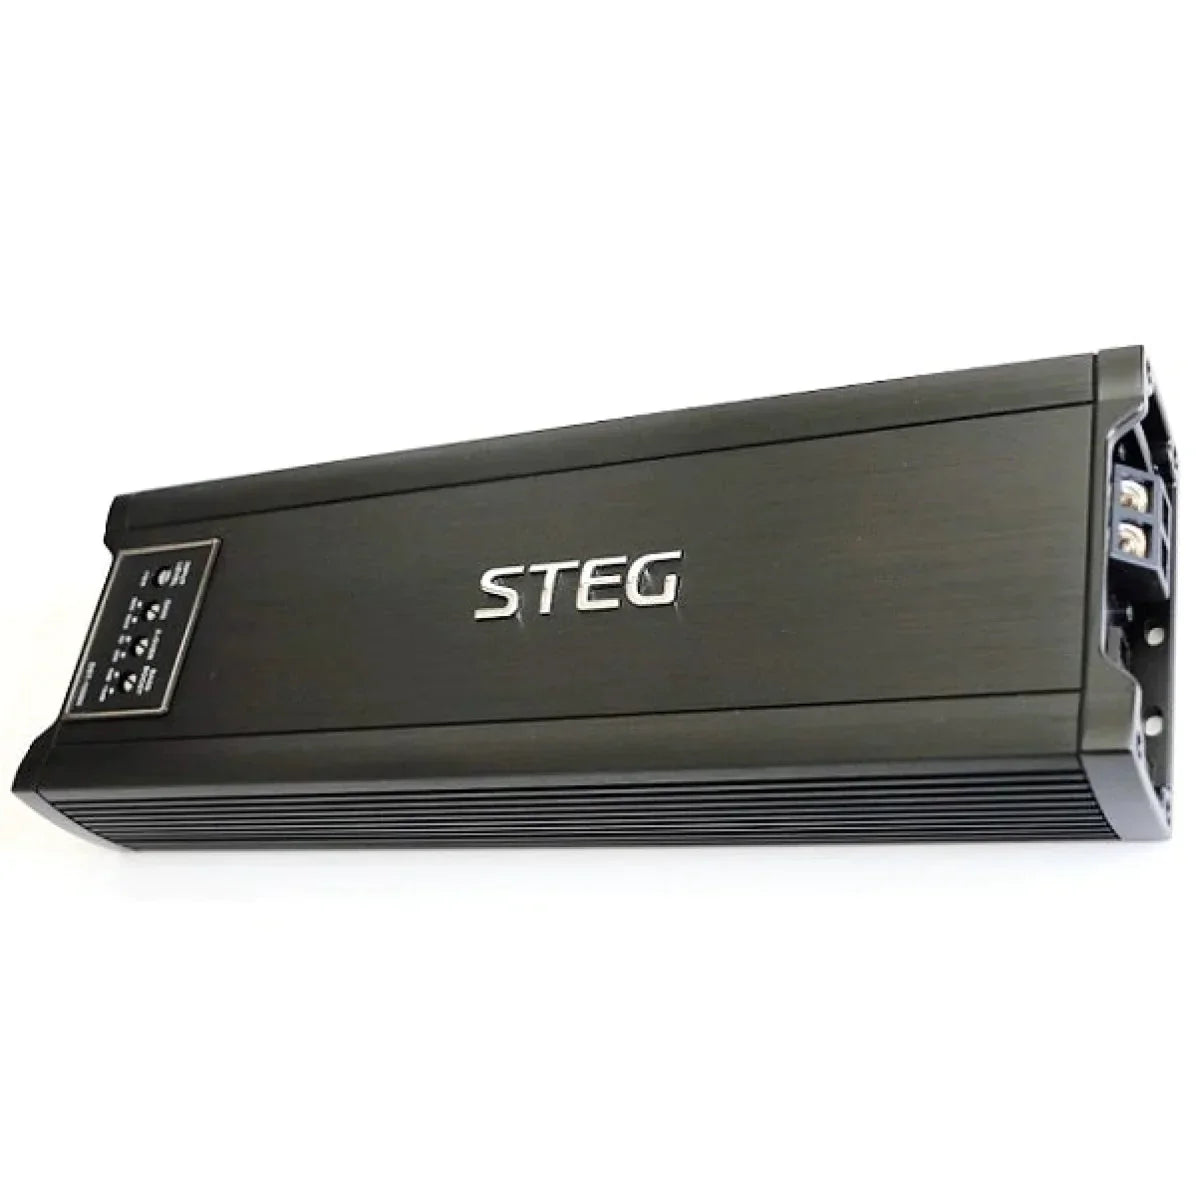 Steg-DST 1000-II-1-Kanal Verstärker-Masori.de